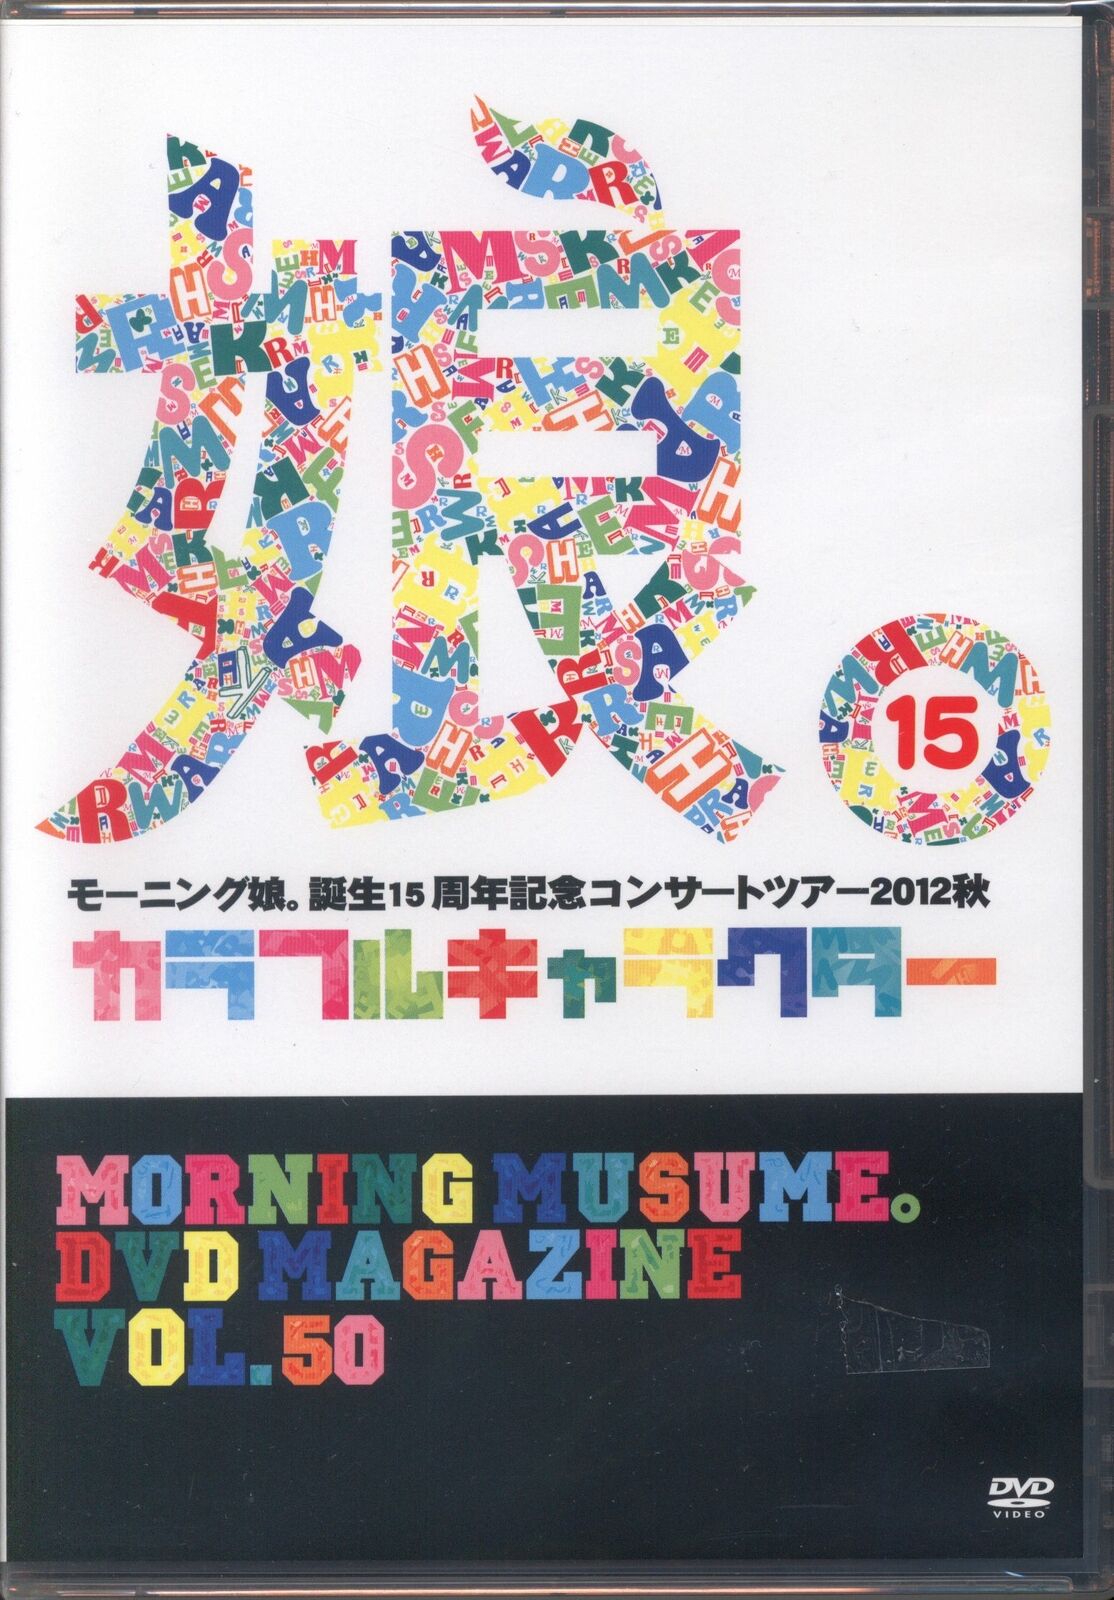 Morning Musume. Morning Musume. DVD MAGAZINE Vol.50 | eBay